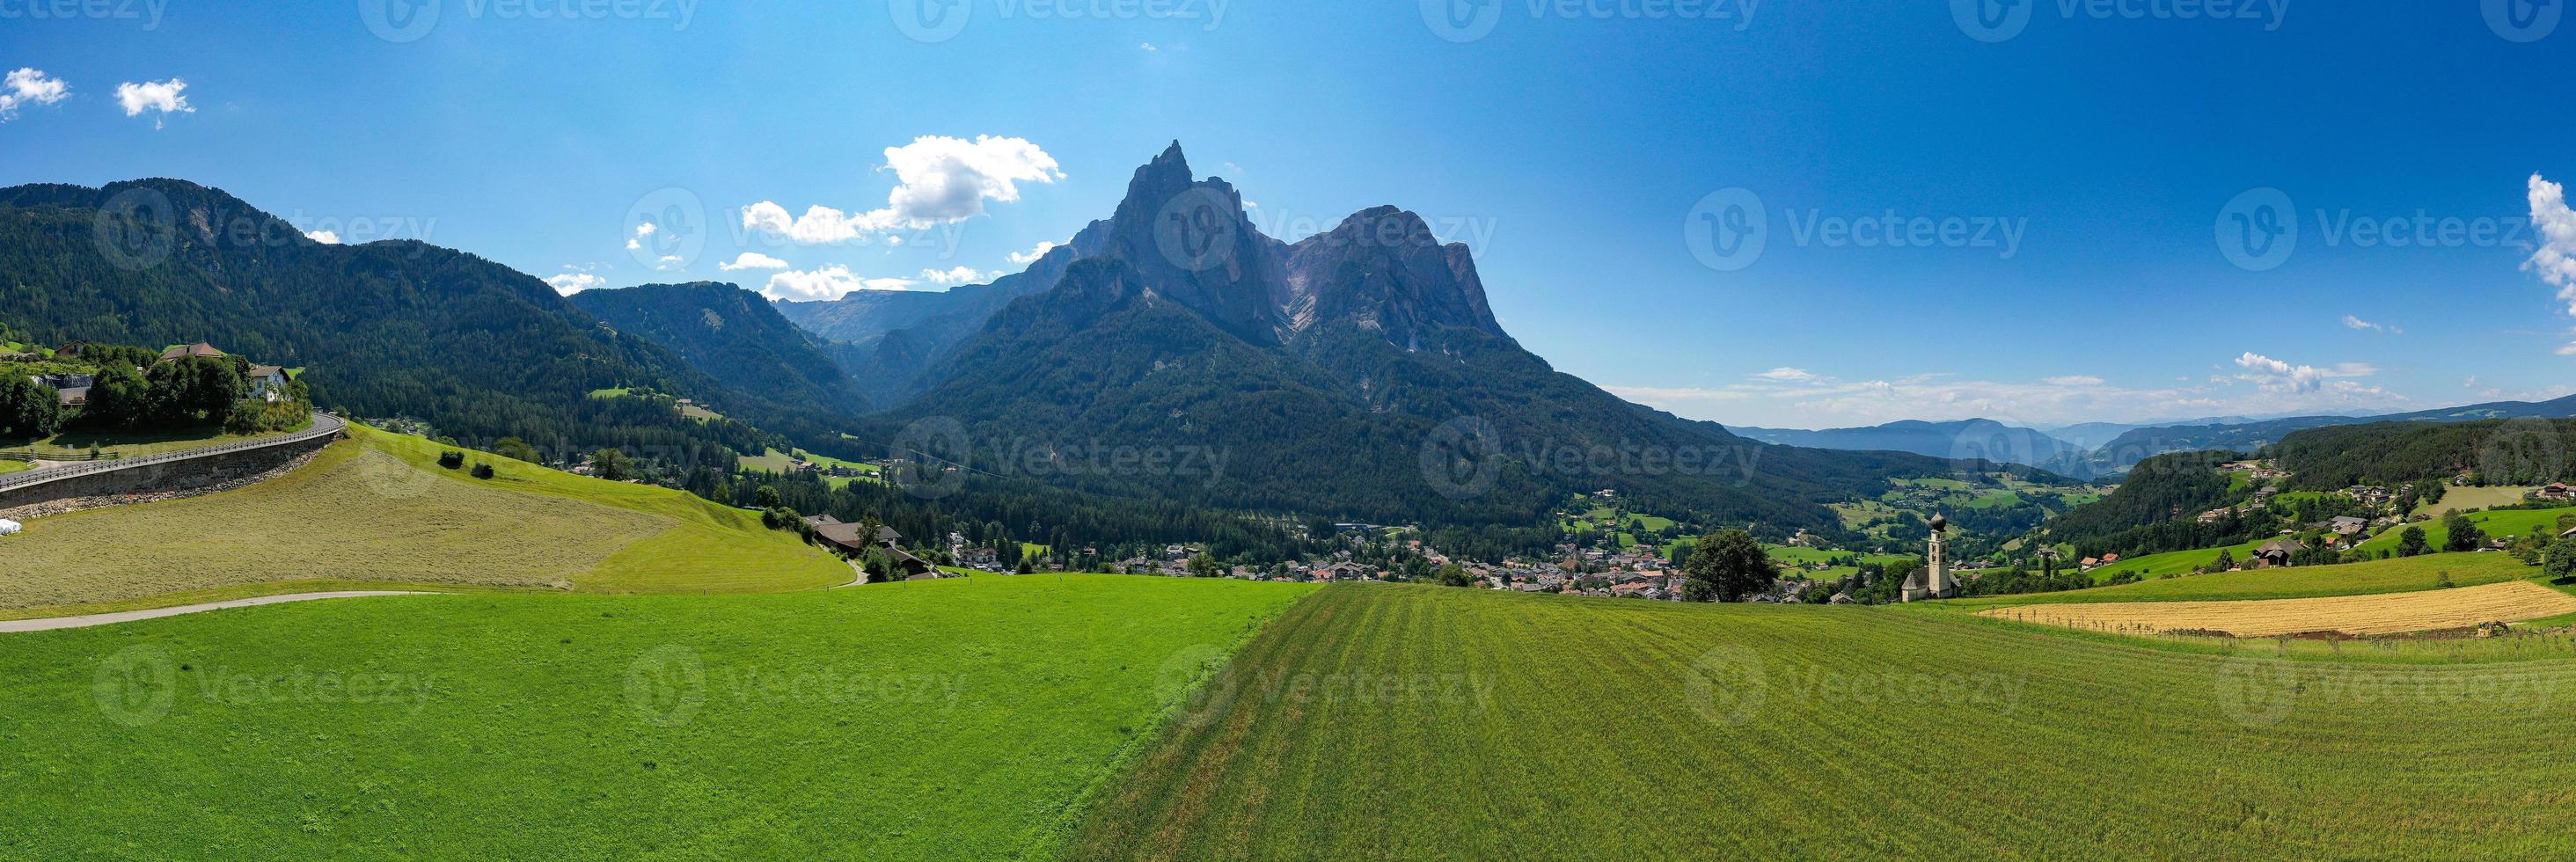 se av petz topp på kastelruth kommun. dolomiterna, söder tyrolen, Italien foto